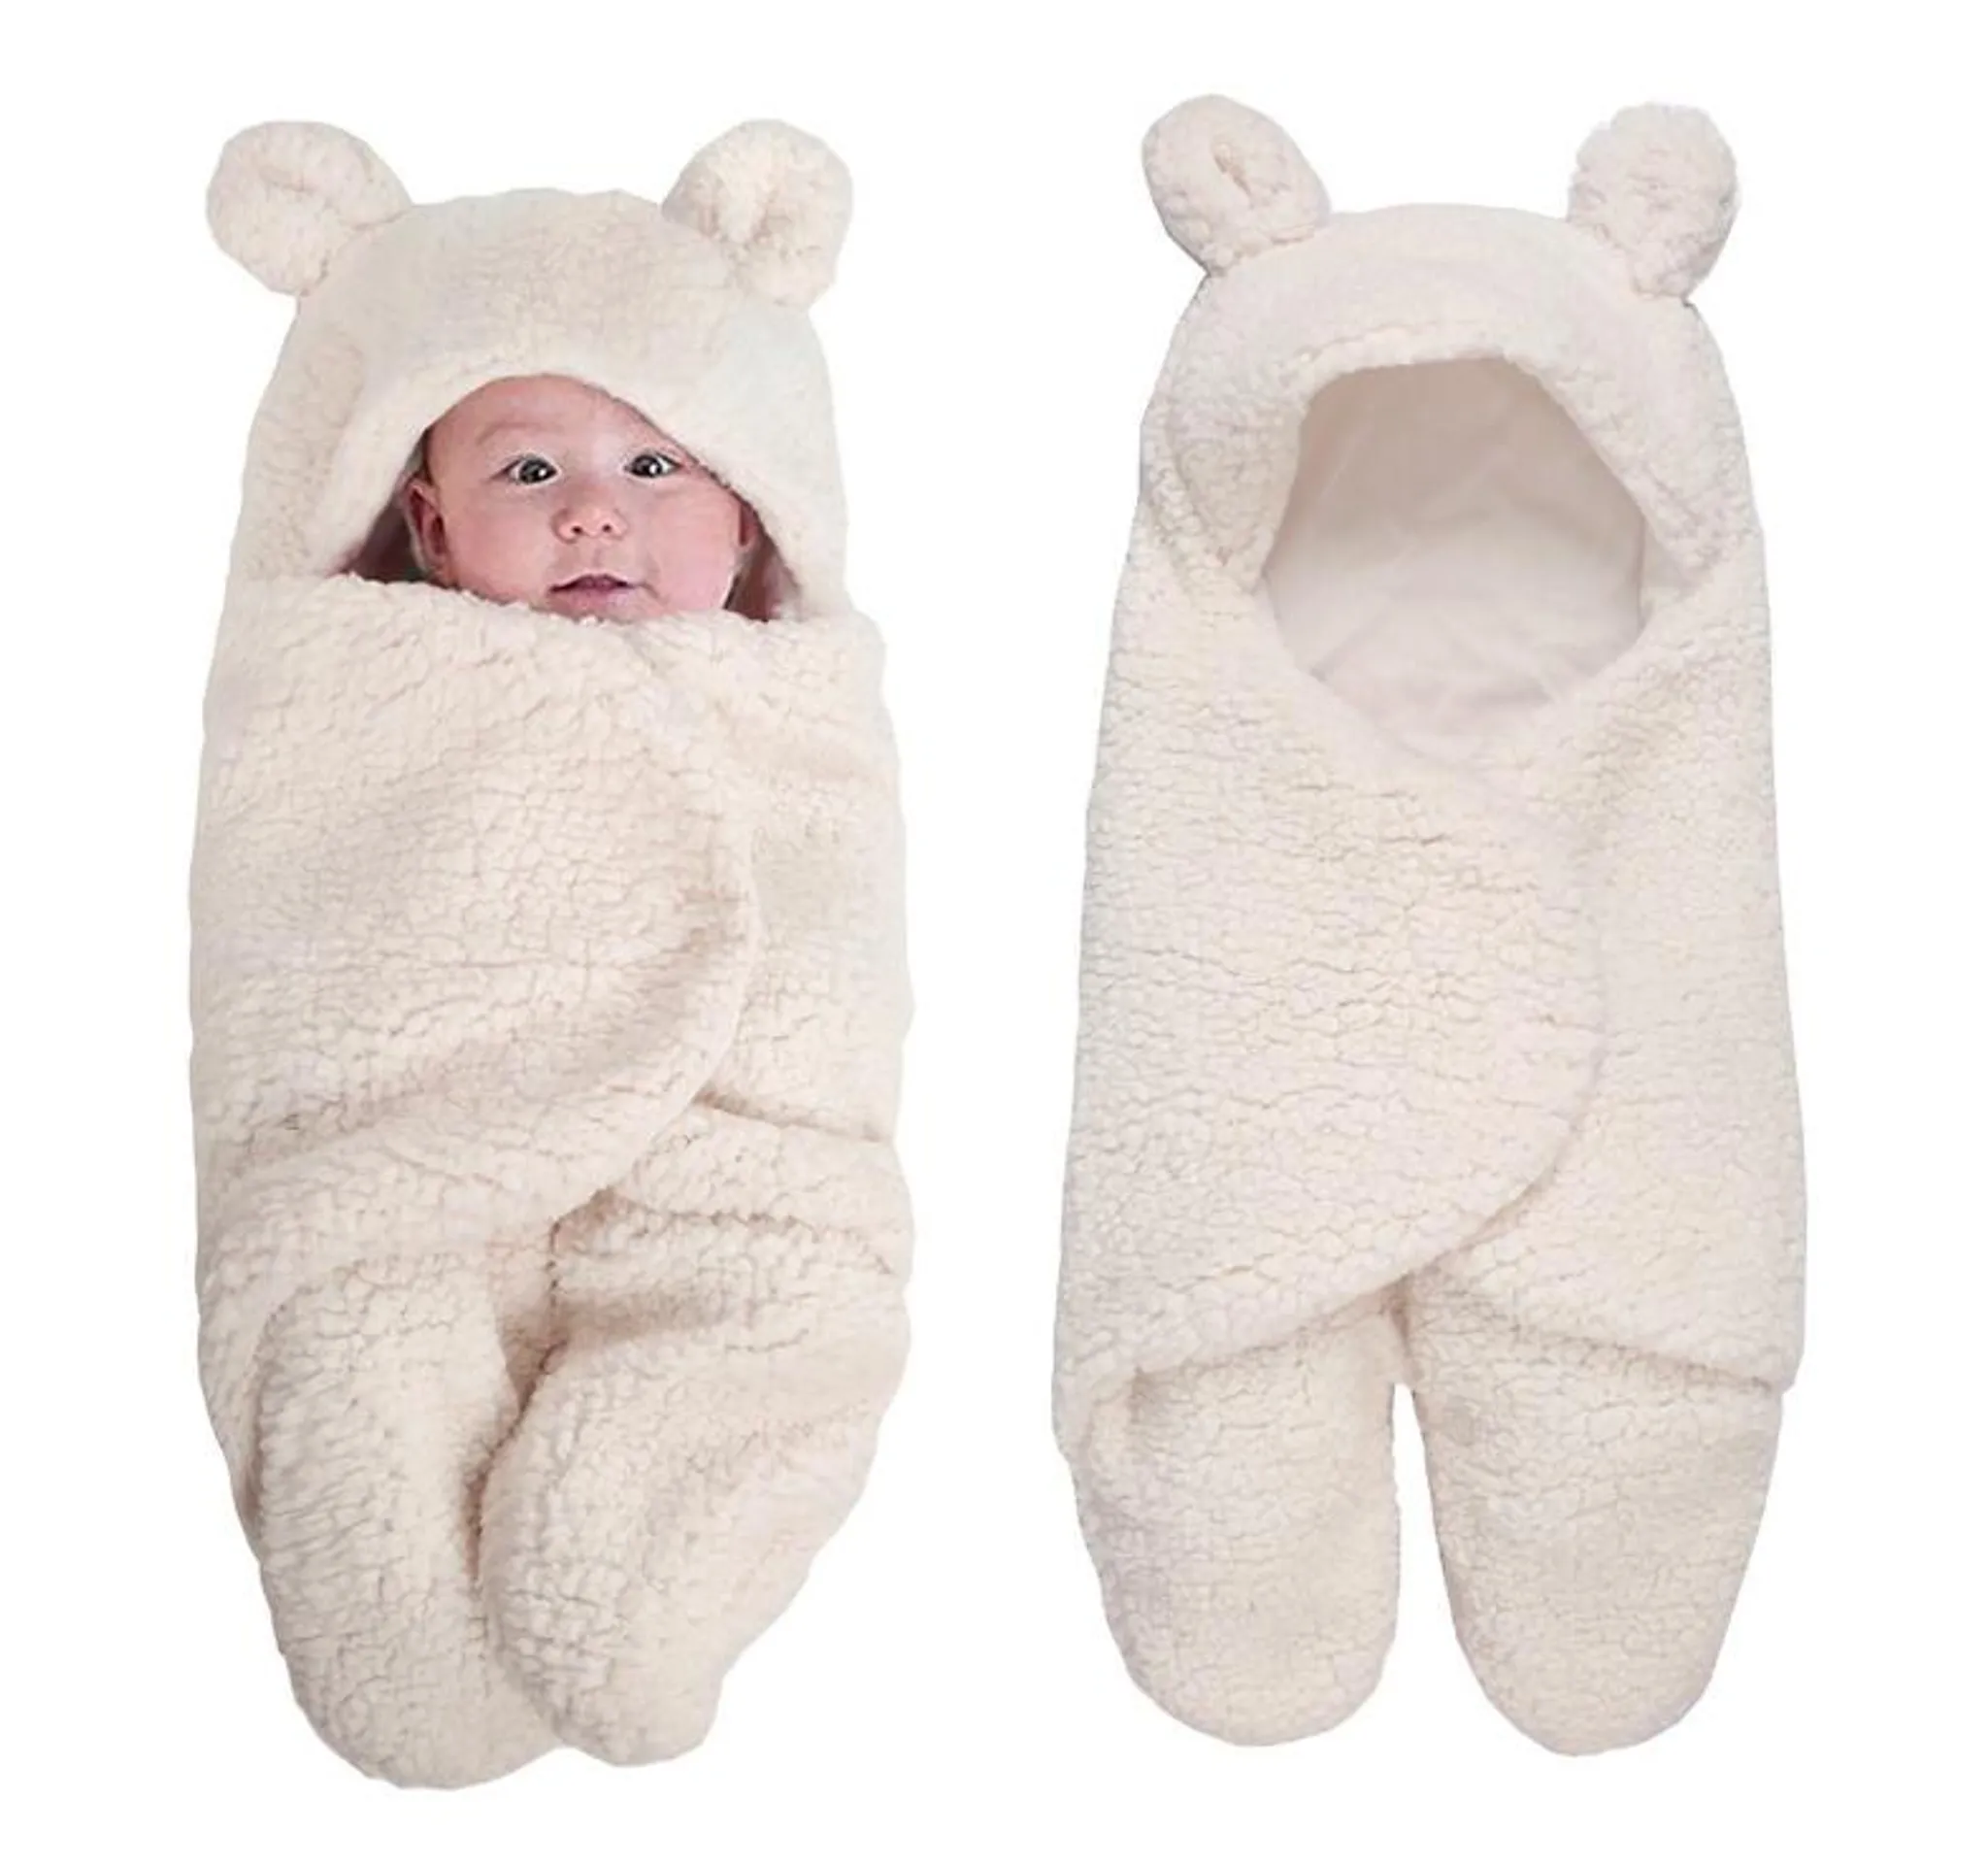 0-12M, Khaki Caerling Baby Schlafsack innen weich gefüttert Pucksack Neugeborenes Wärmer Wickeldecken Wickeln Tragbarer Lammwolle Schlafsack für 0-12 Monat Baby 